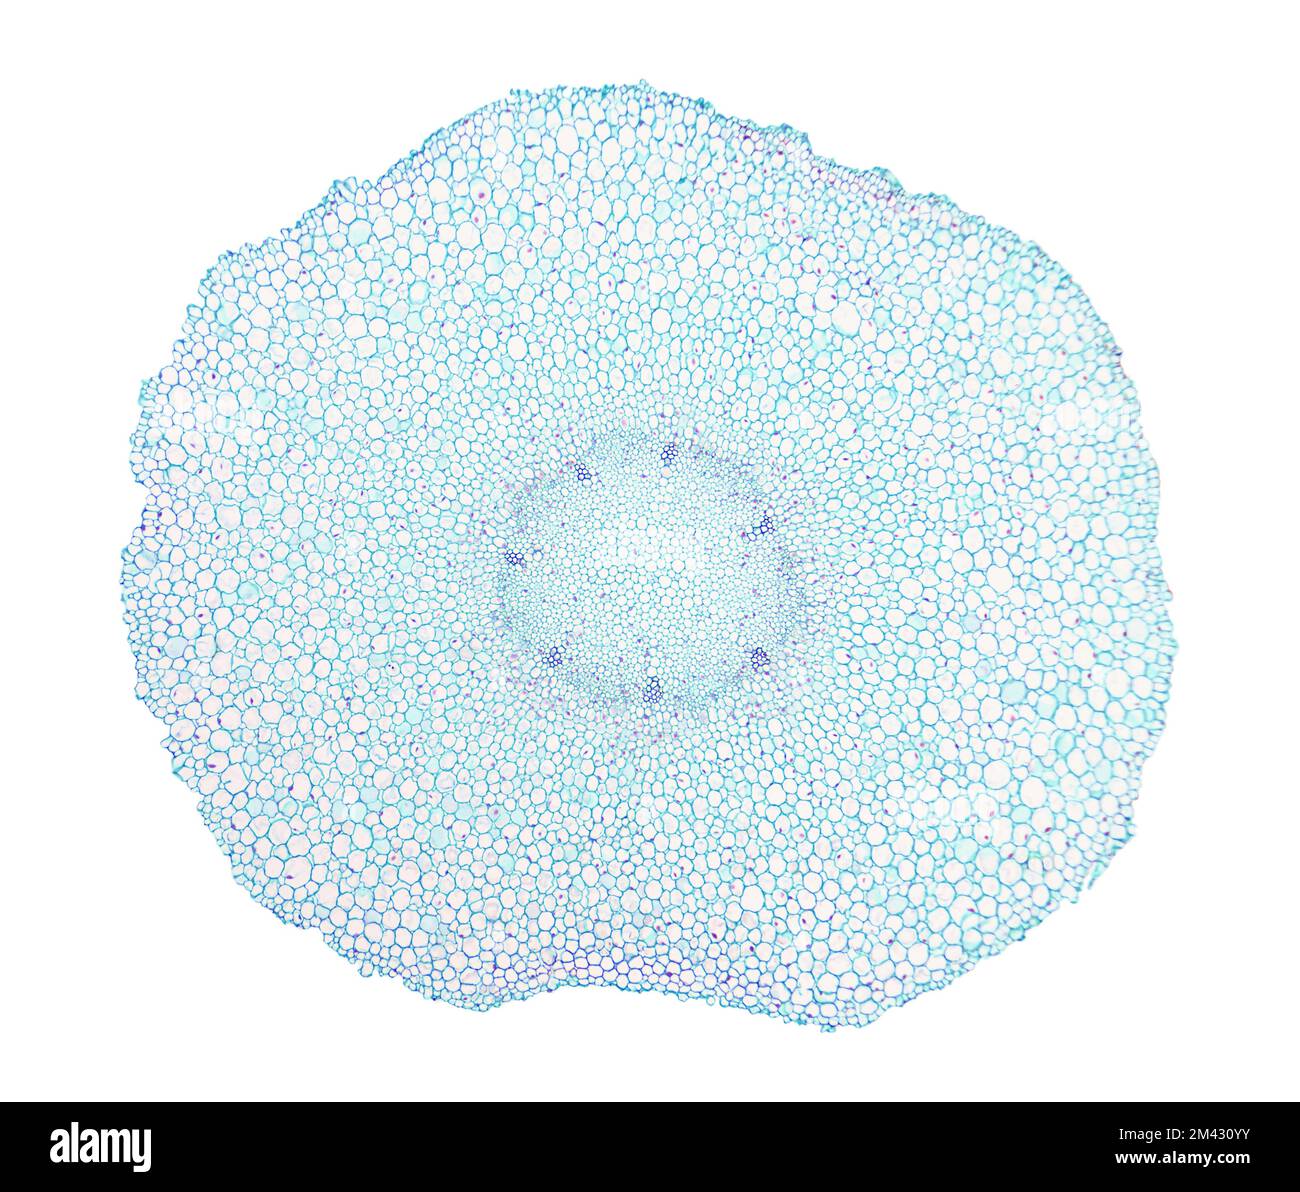 Radice giovane di fagiolo largo, intera sezione trasversale di una radice di fagiolo di fava, Vicia faba, sotto il microscopio luminoso. Foto Stock